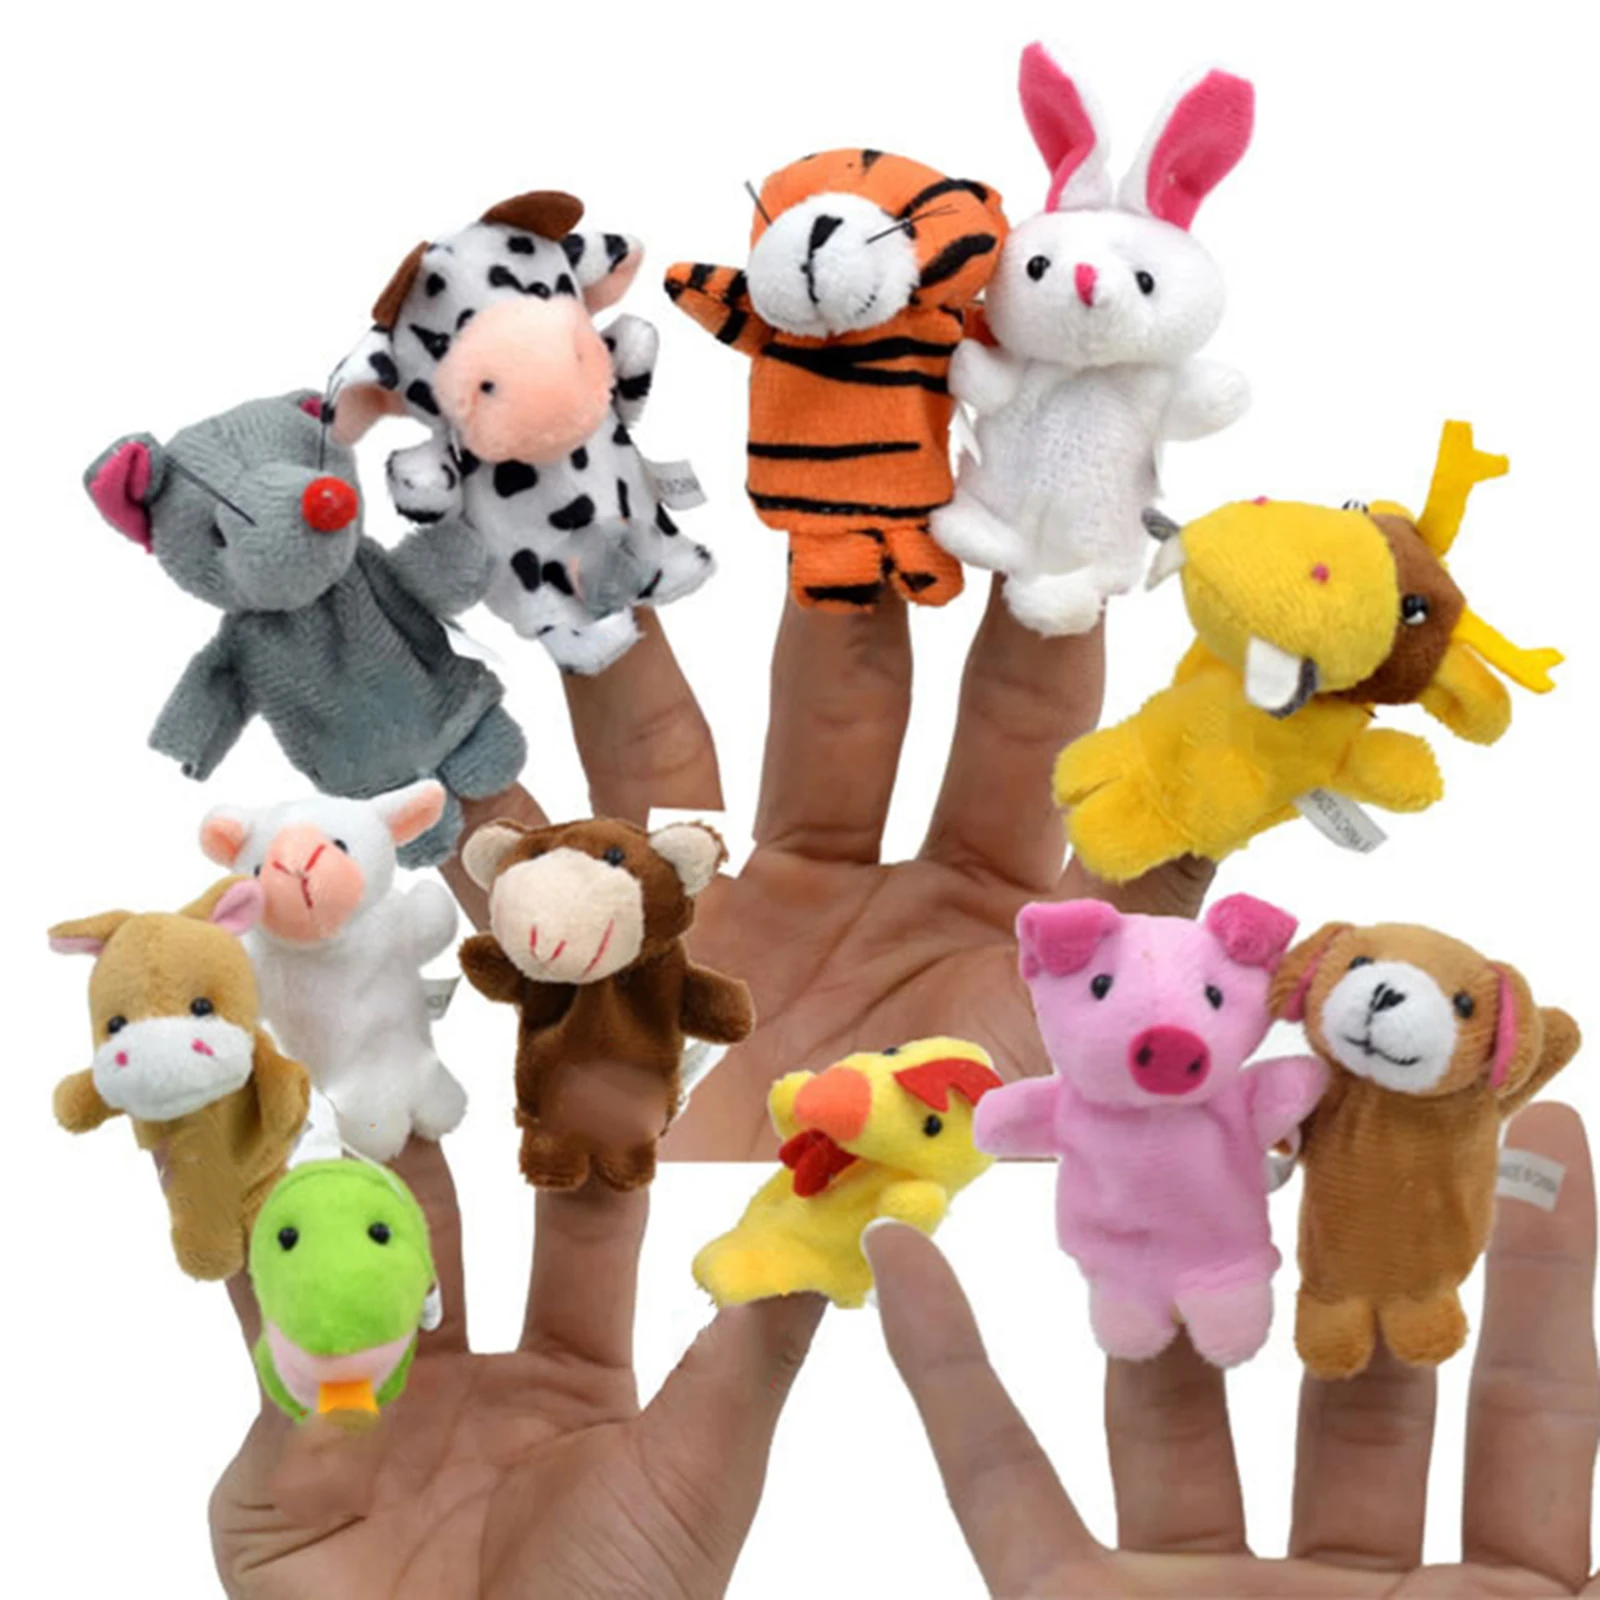 

Палец набор куколок-марионеток ткань бархат куклы мини Животные история героями комиксов для школы воспроизведения GQ